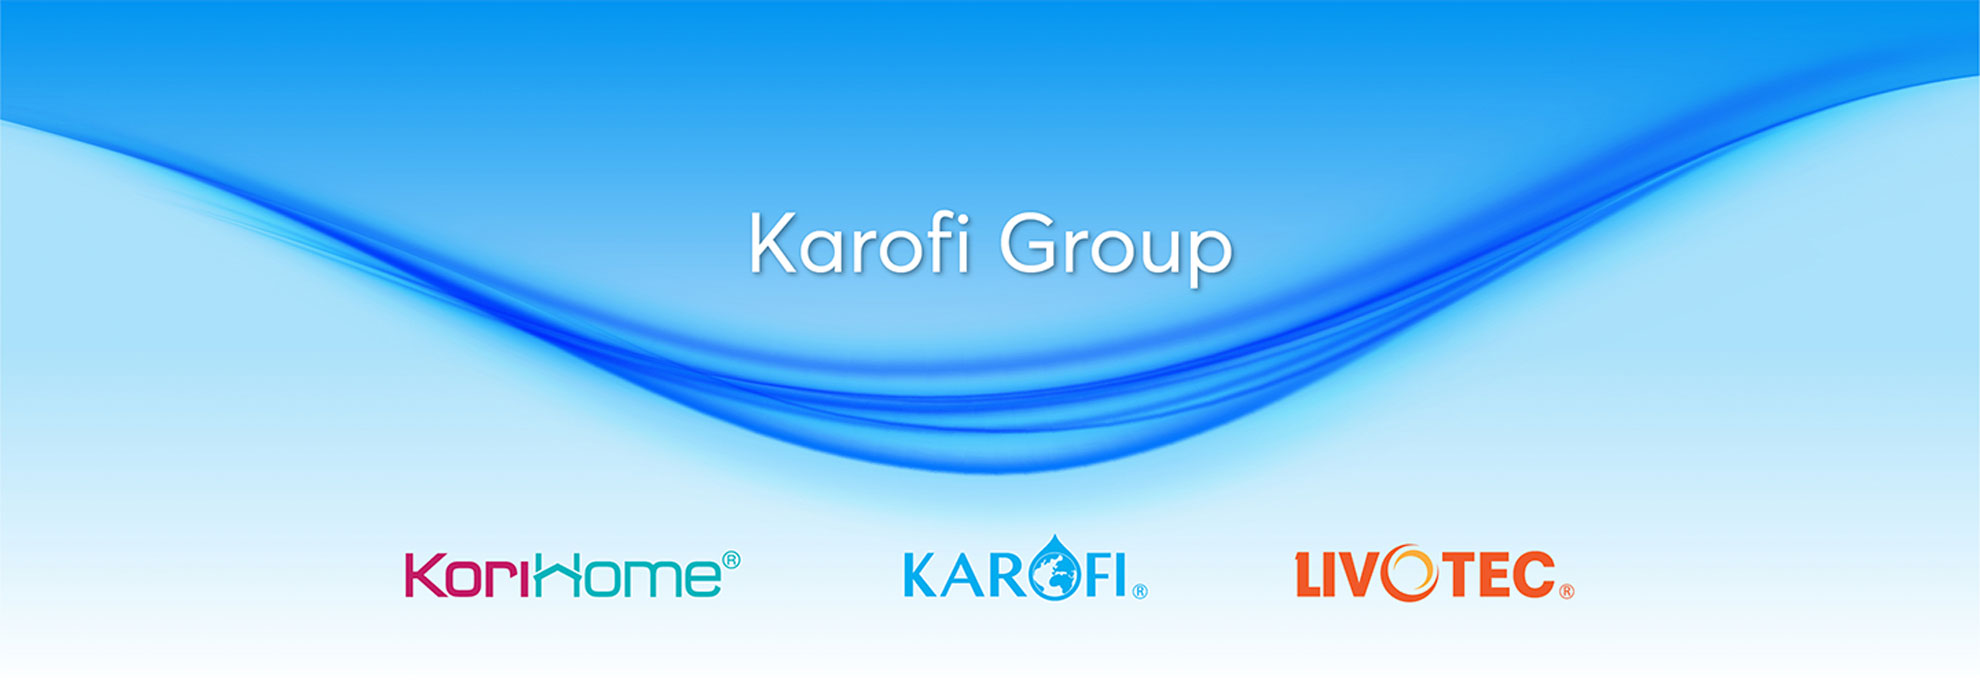 karofi-group